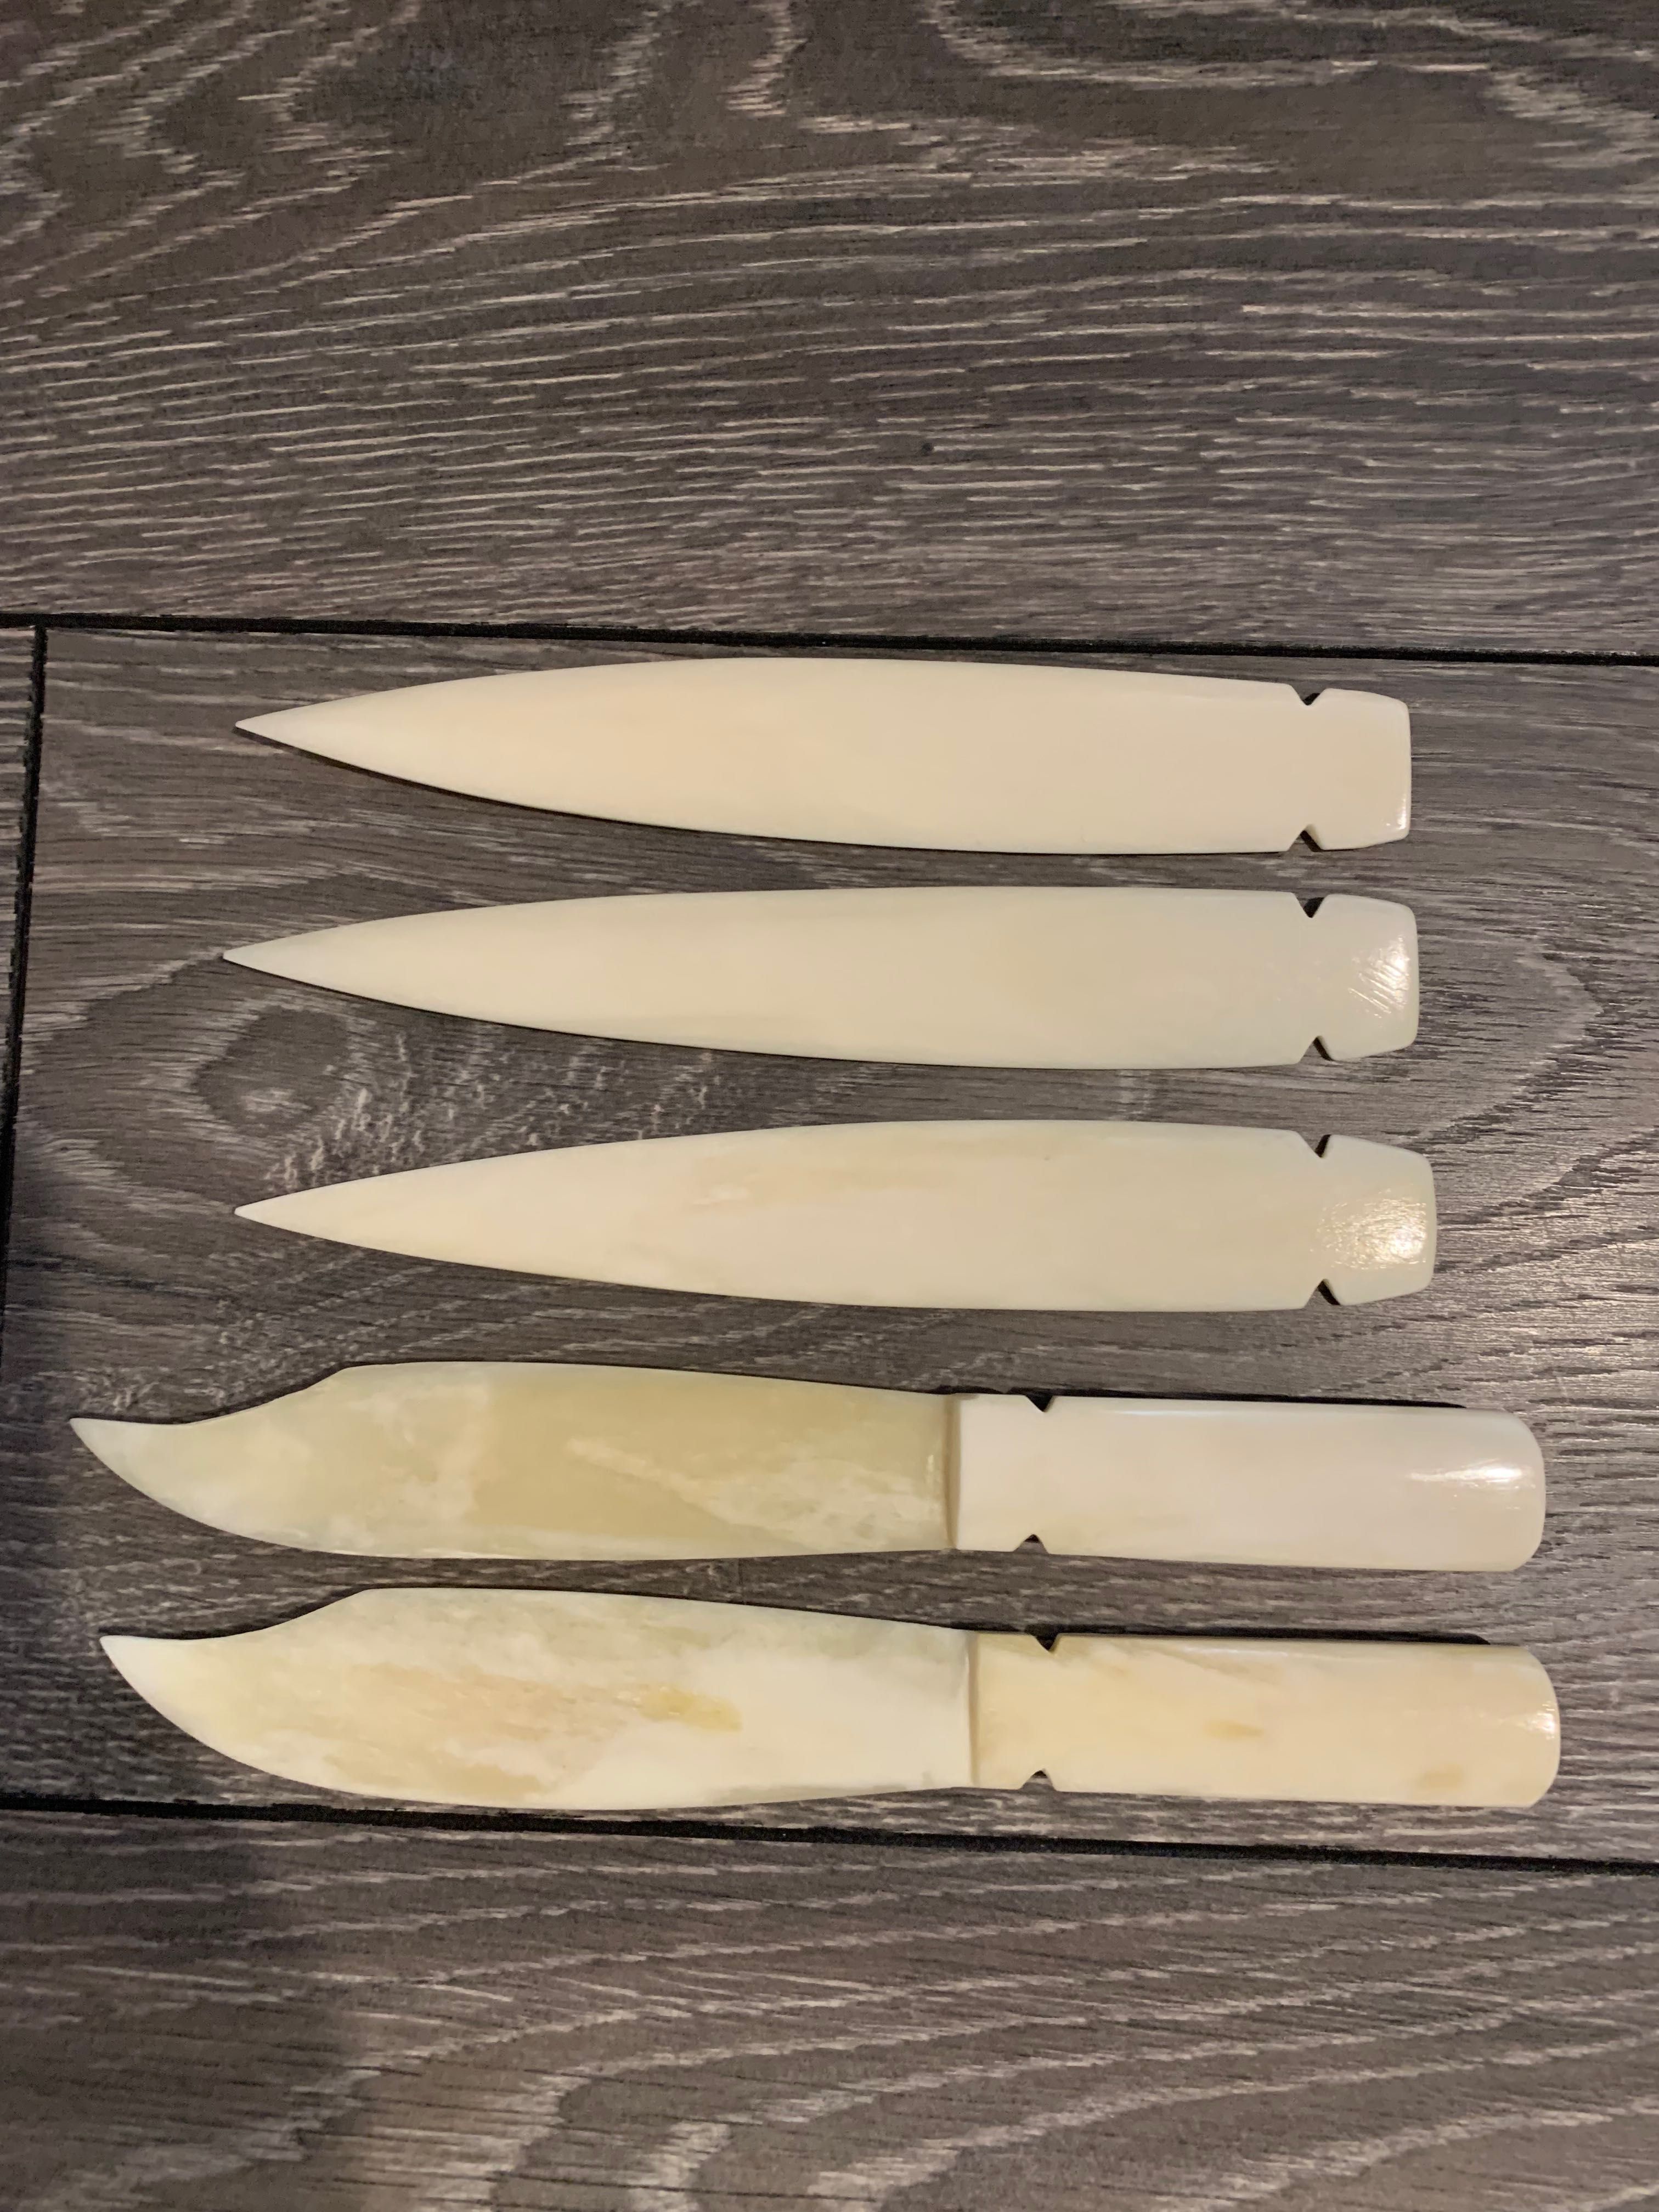 Нож изработка 100% Бъфало кост - Острие 100% Бъфало кост